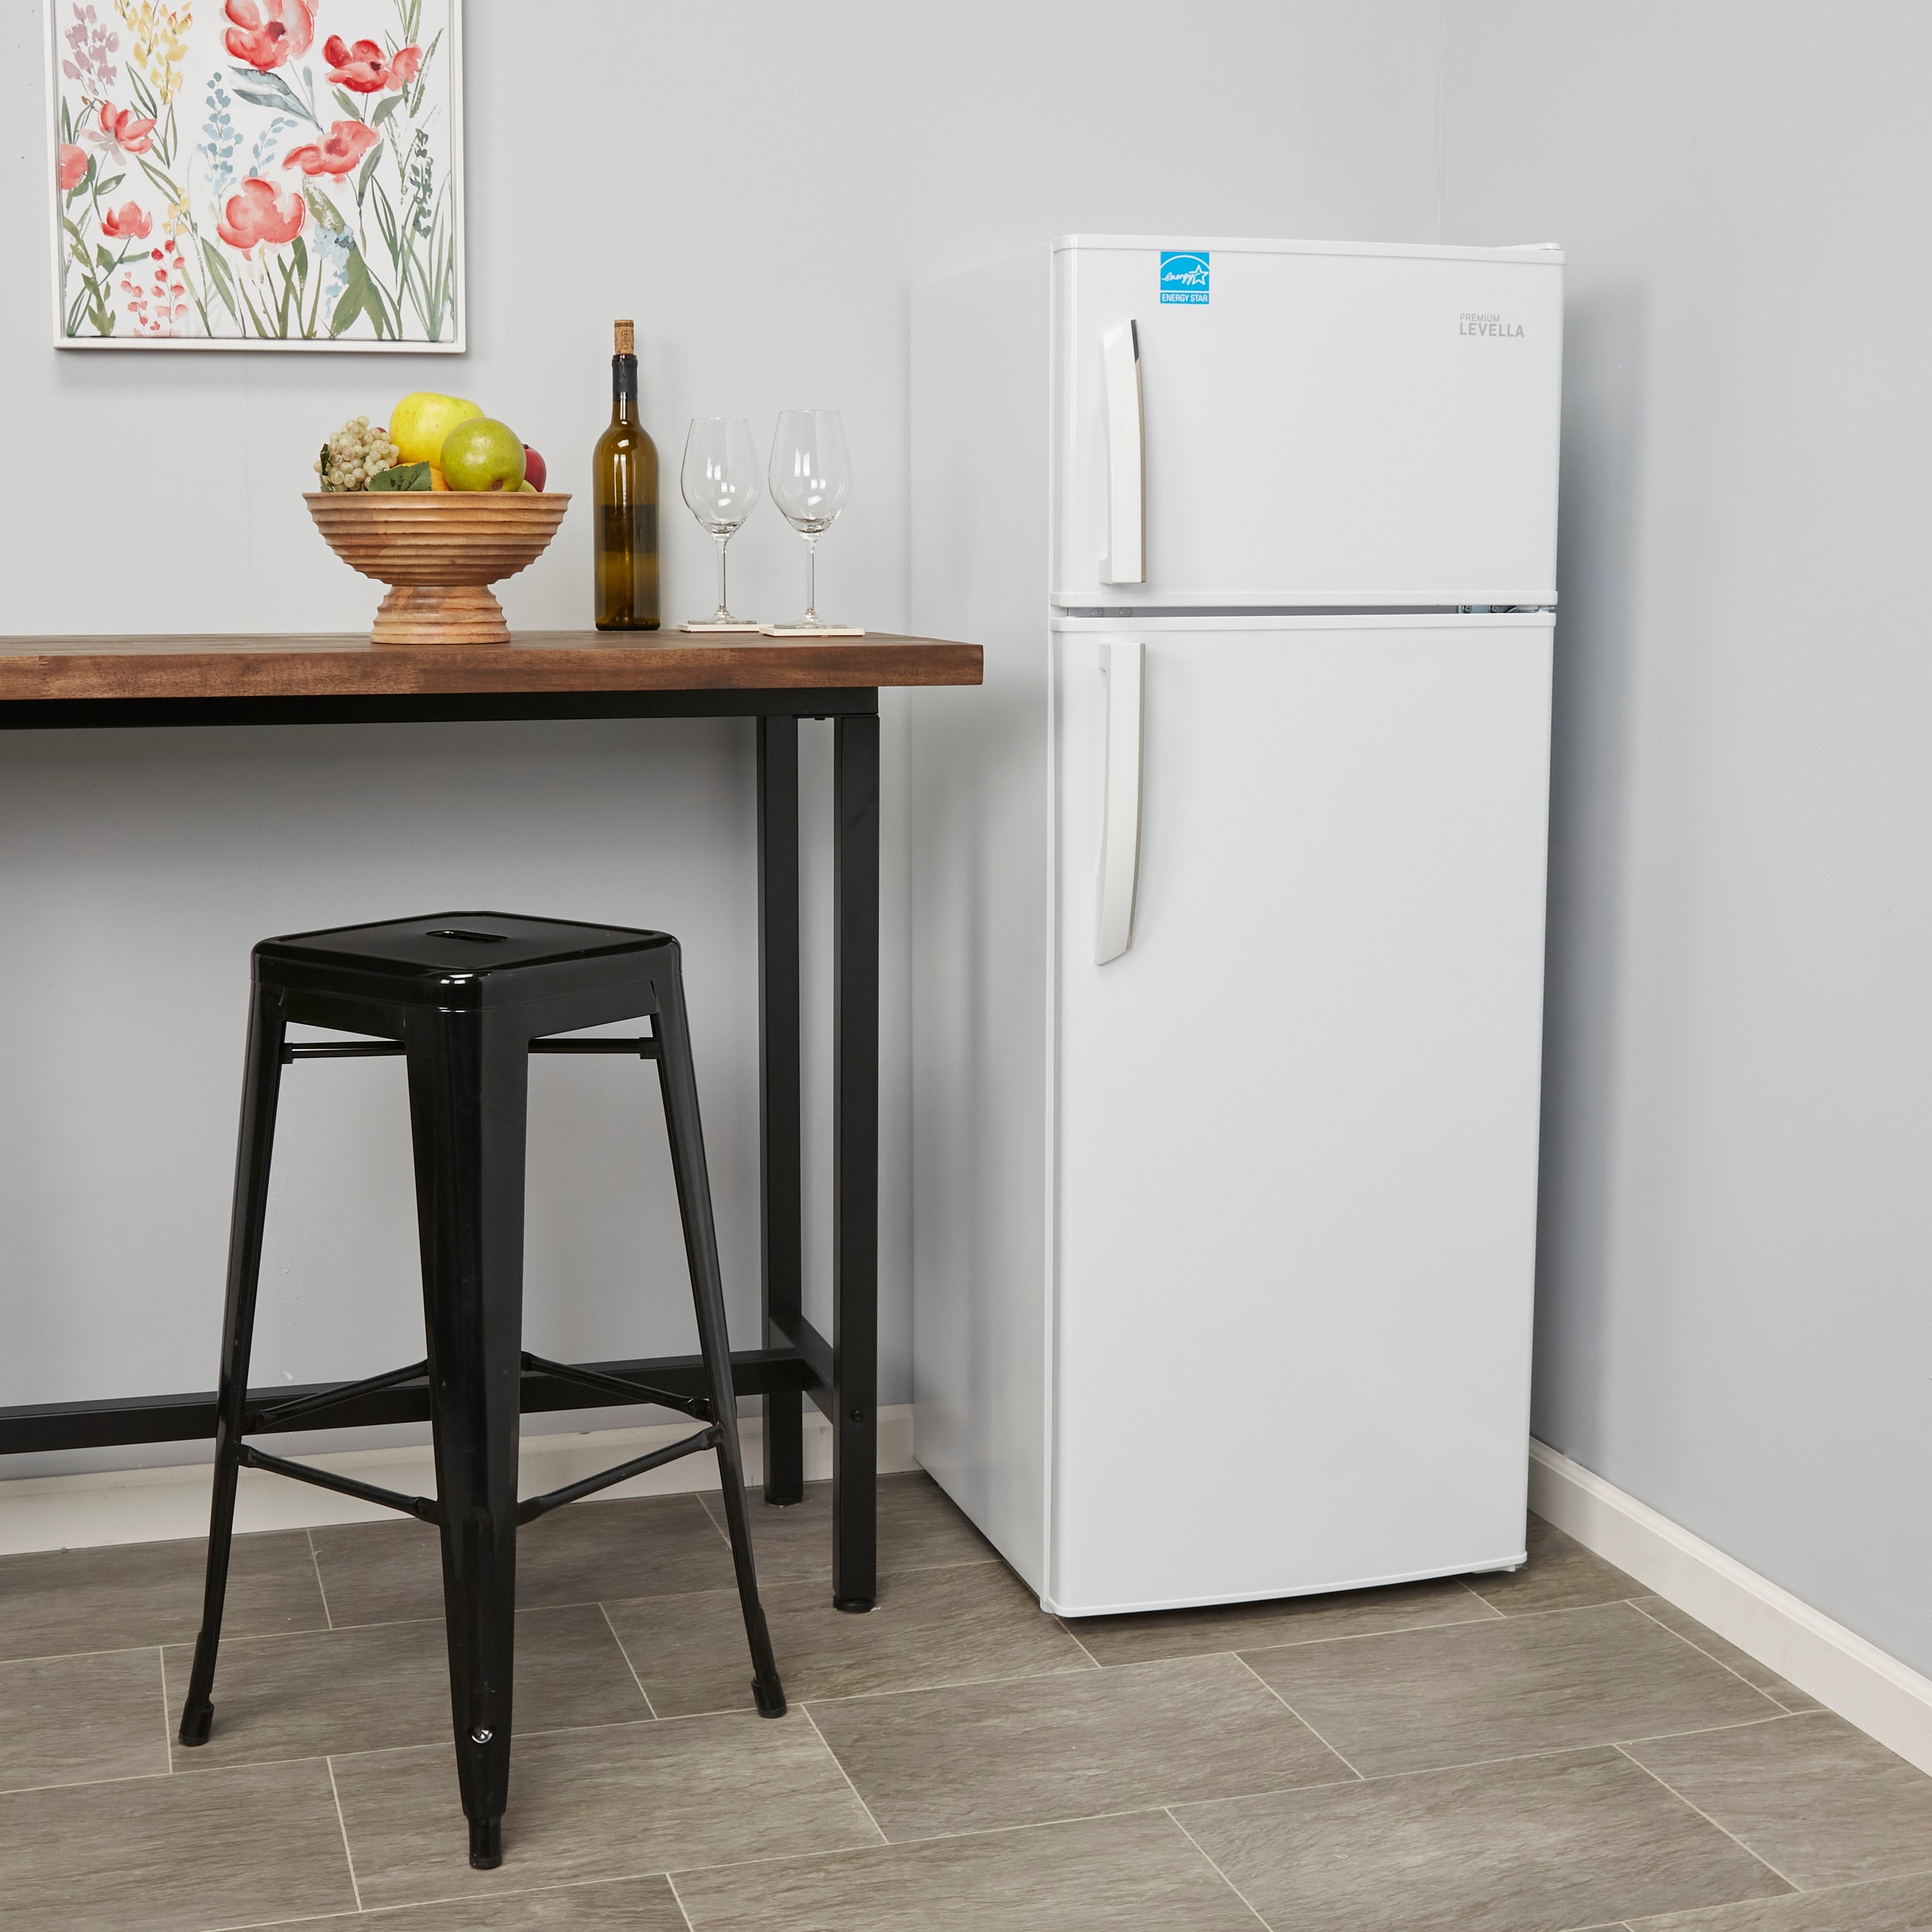 Frigidaire 7.5-cu ft Counter-depth Top-Freezer Refrigerator (Black